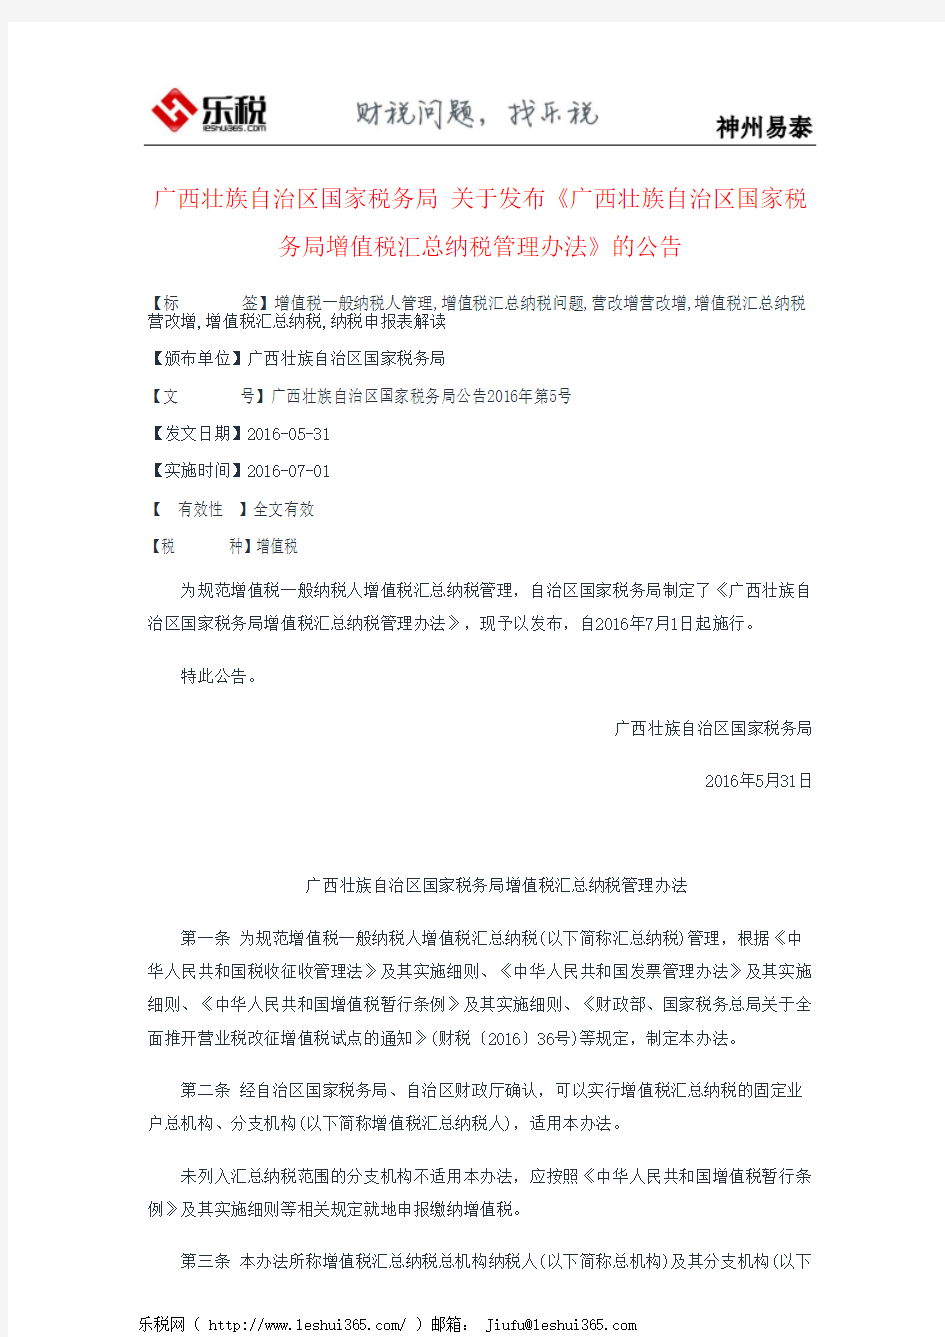 广西壮族自治区国家税务局 关于发布《广西壮族自治区国家税务局